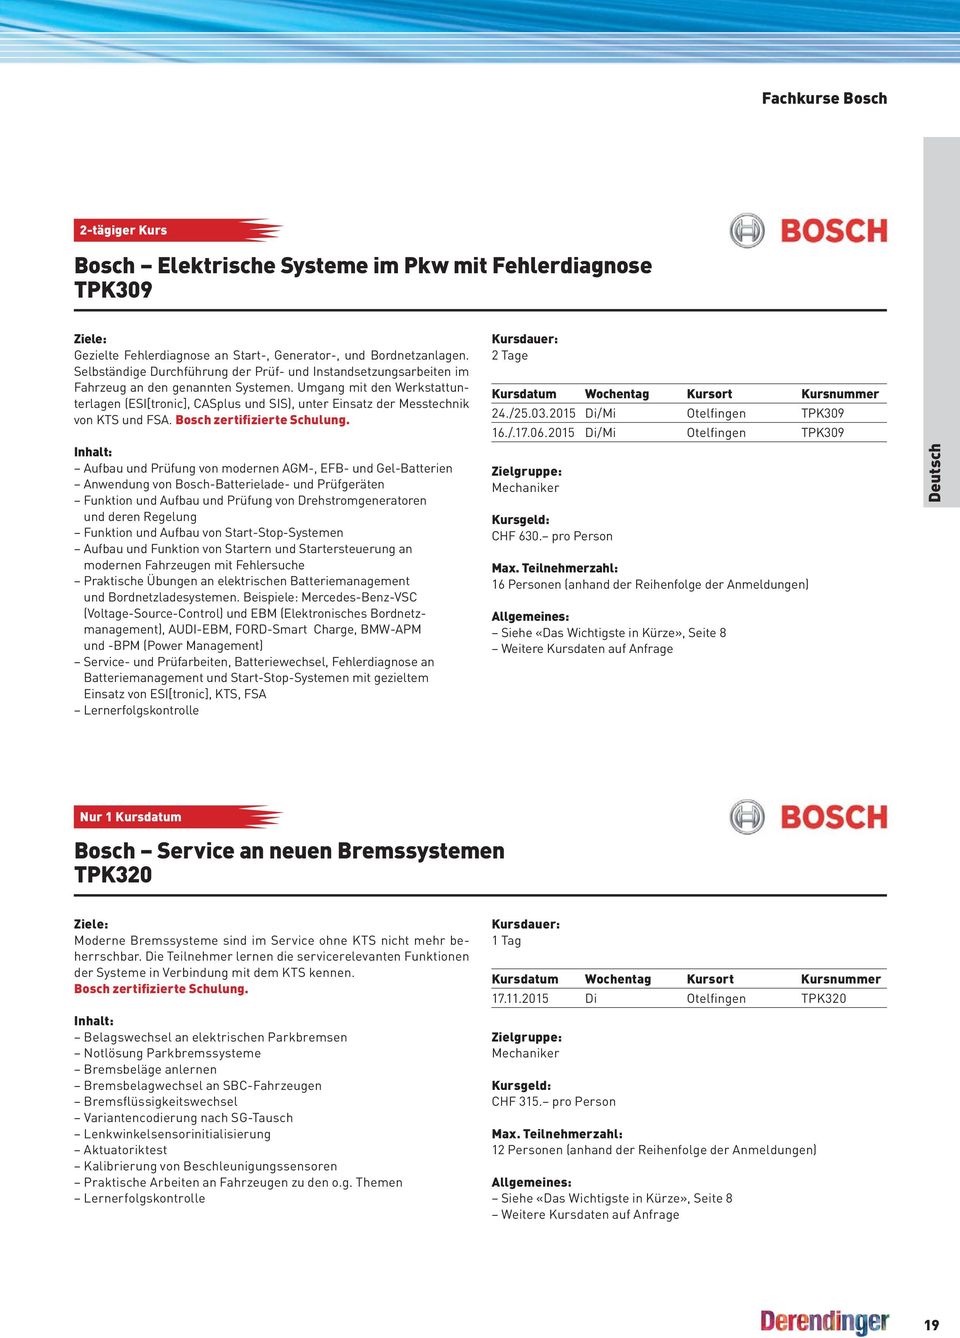 Umgang mit den Werkstattunterlagen (ESI[tronic], CASplus und SIS), unter Einsatz der Messtechnik von KTS und FSA. Bosch zertifizierte Schulung.